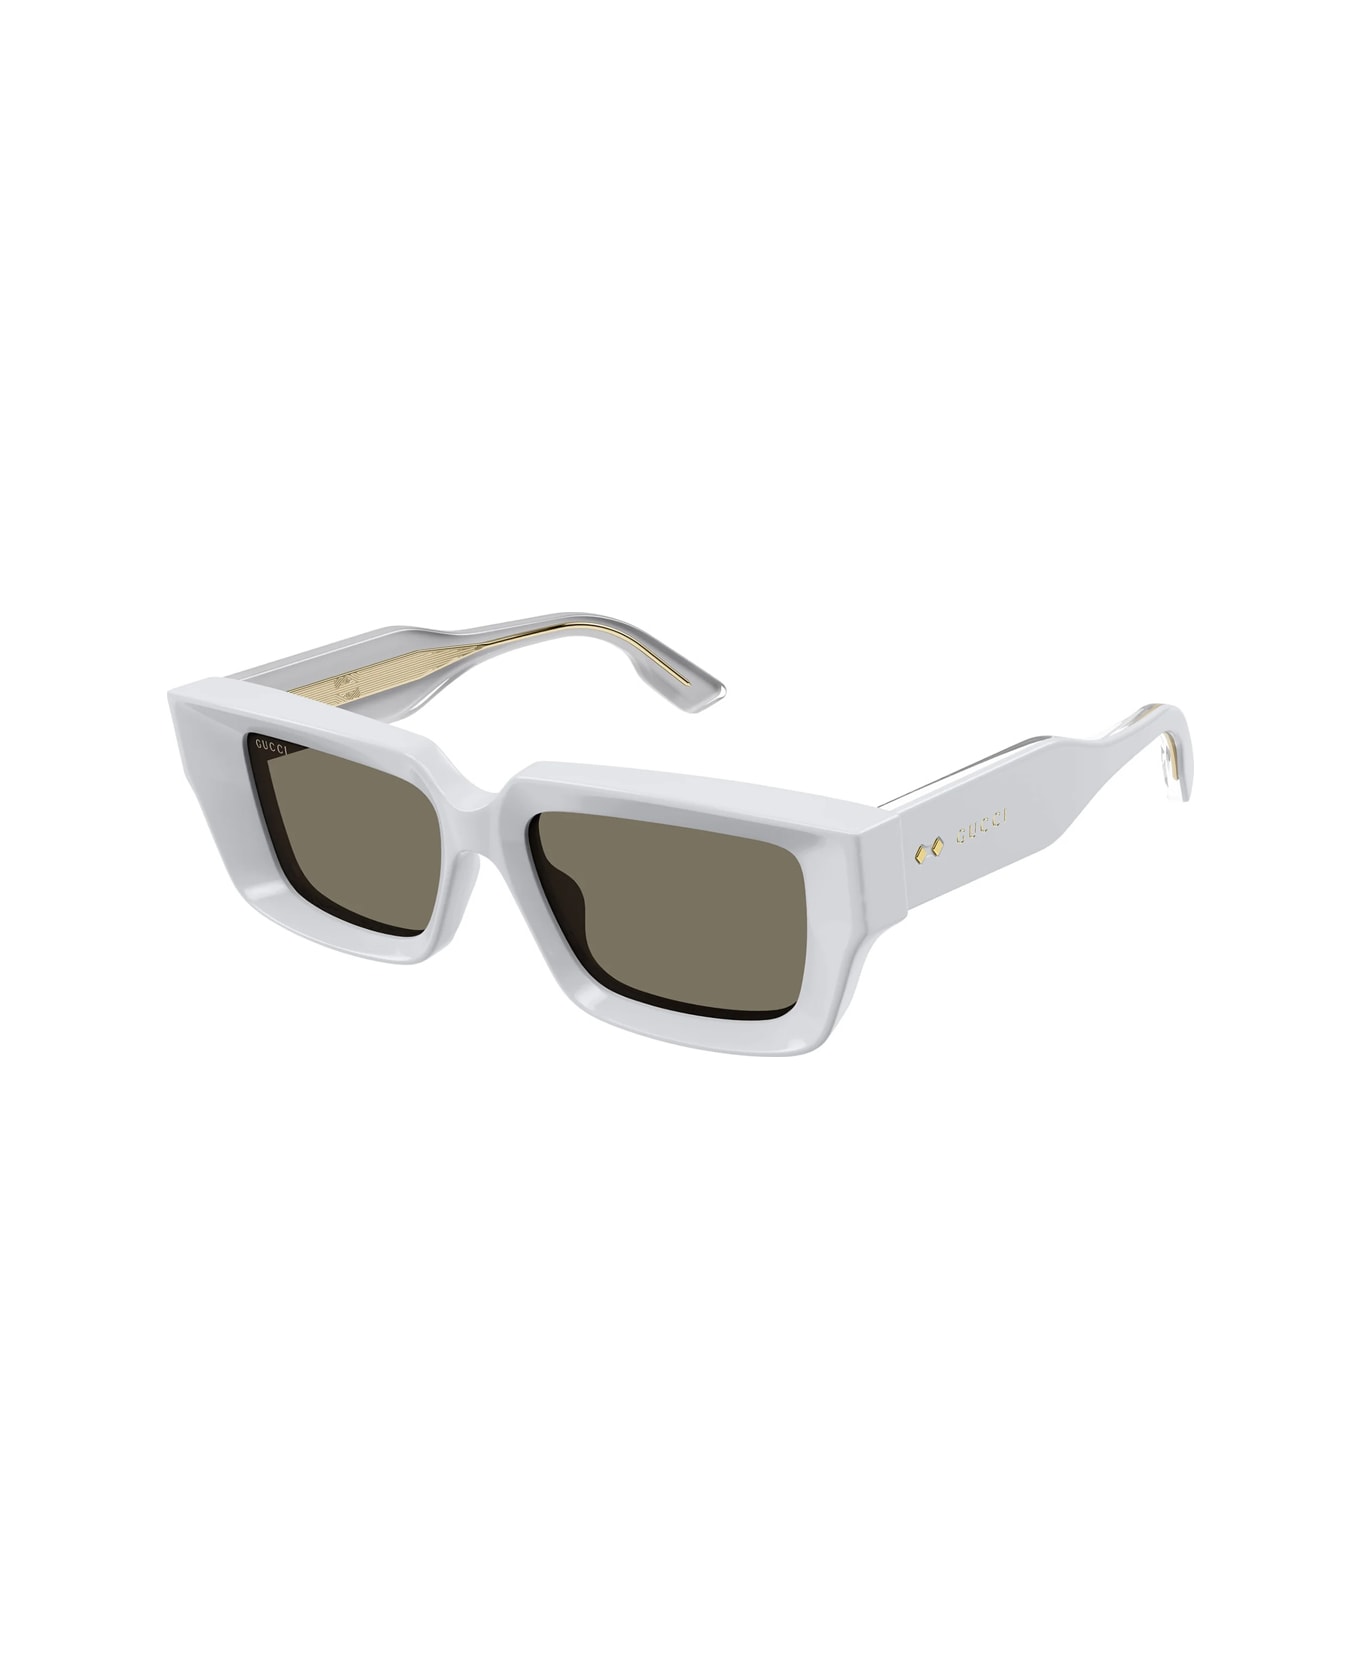 Gucci Eyewear Gg1529s 004 Sunglasses - Grigio サングラス